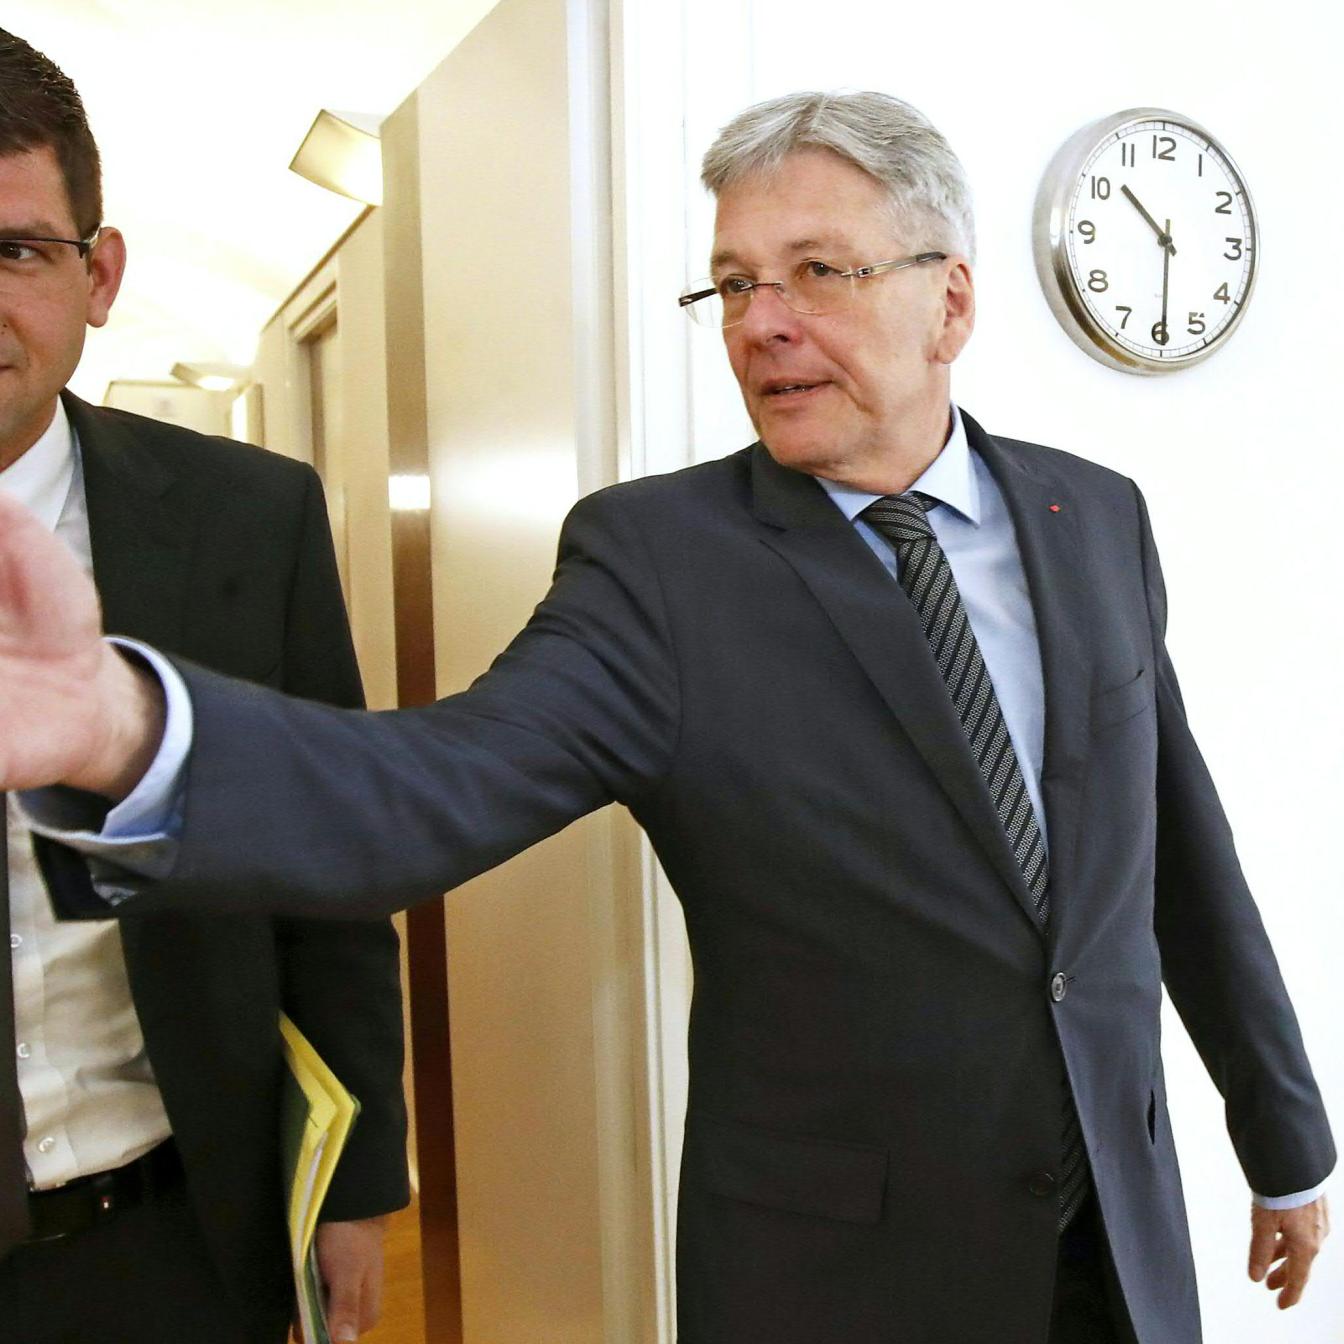 Martin Gruber (ÖVP) und Landeshauptmann Peter Kaiser (SPÖ) verhandeln in Kärnten